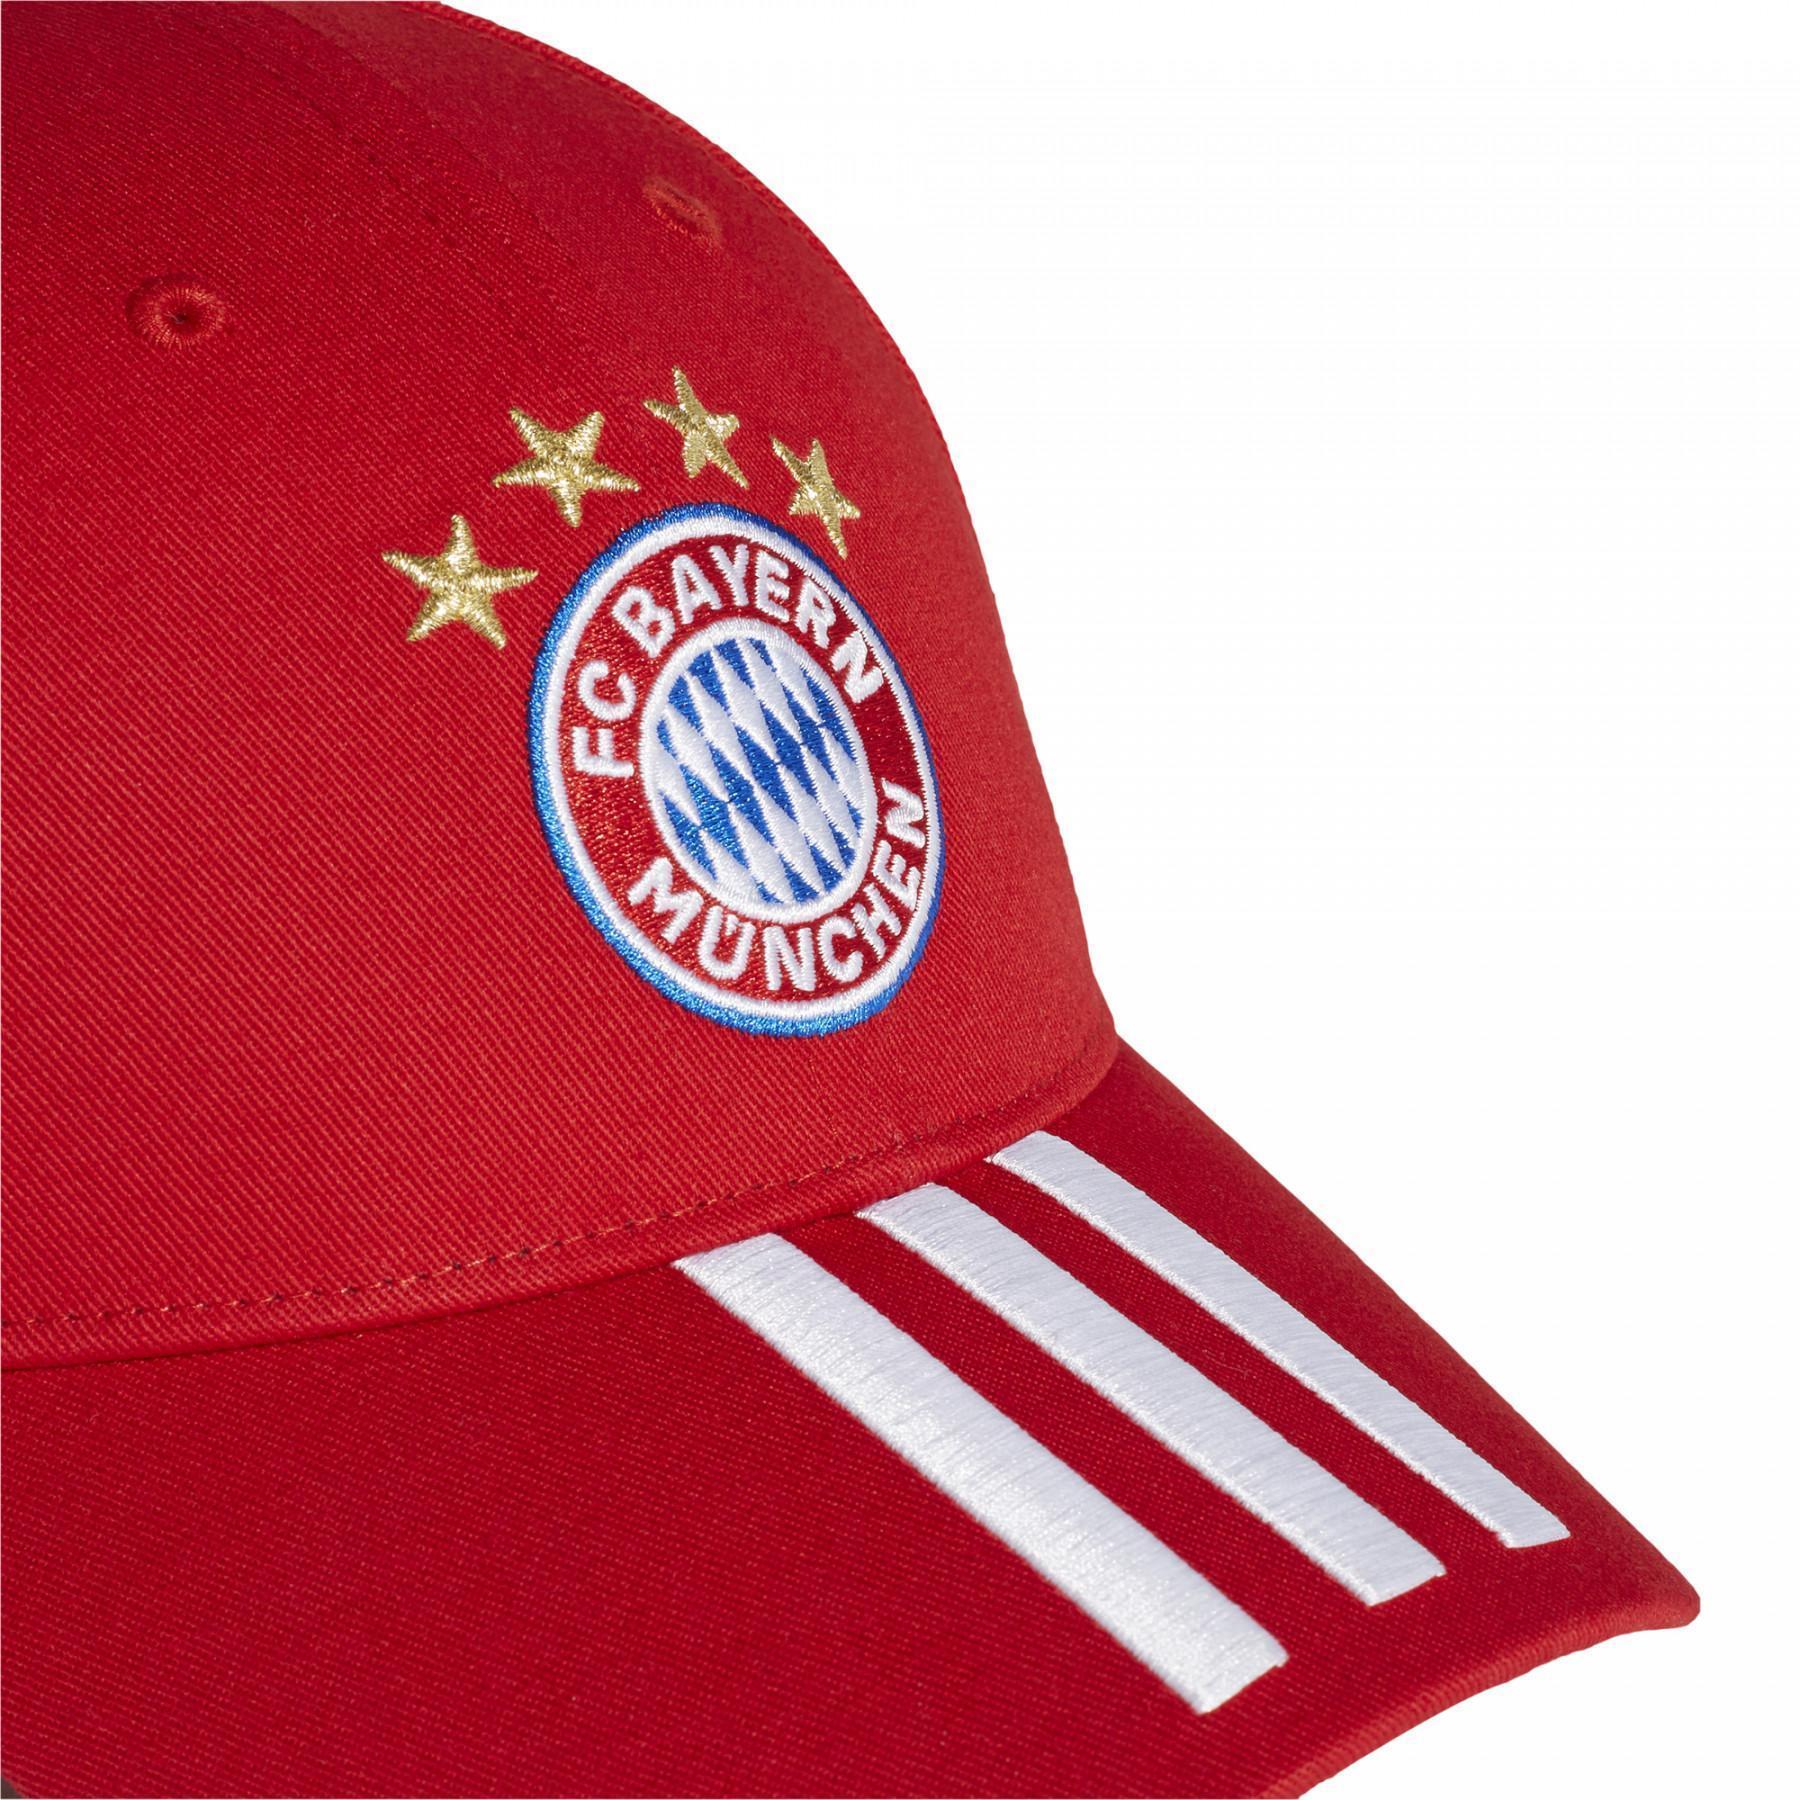 Gorra de béisbol del Bayern